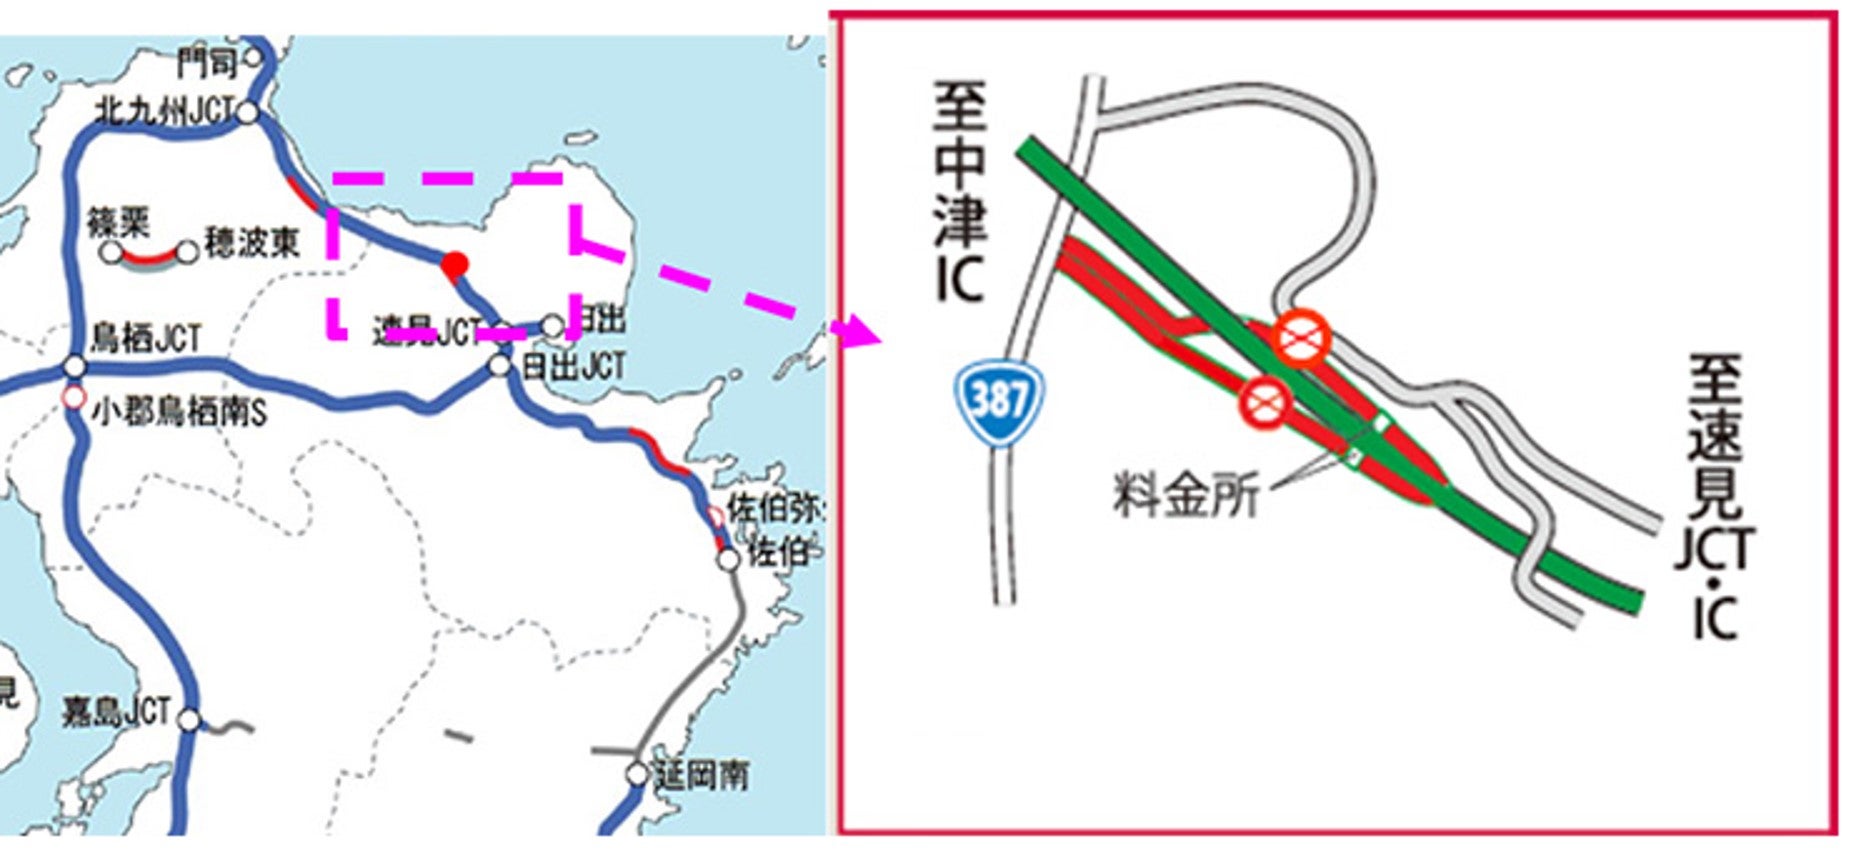 東九州道・院内ICの場所と閉鎖箇所の地図